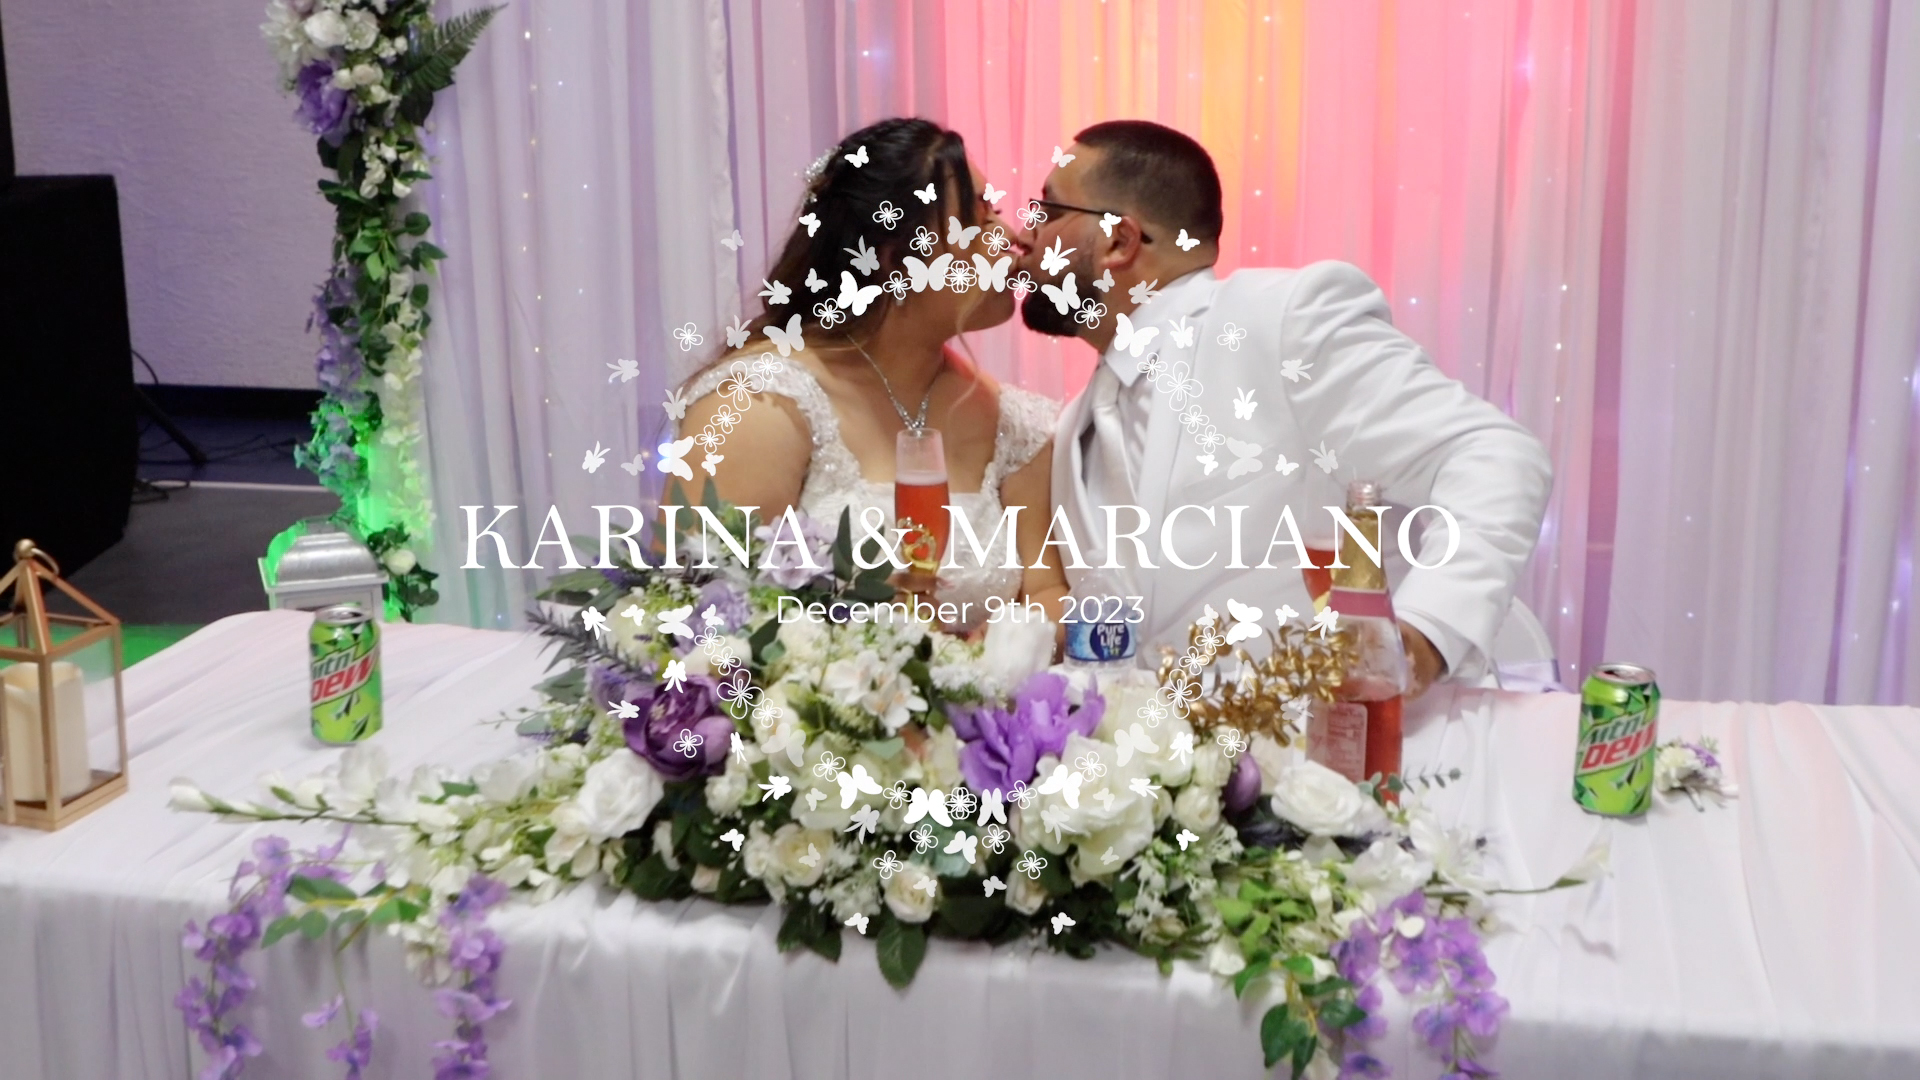 Karina & Marciano Wedding – Trailer